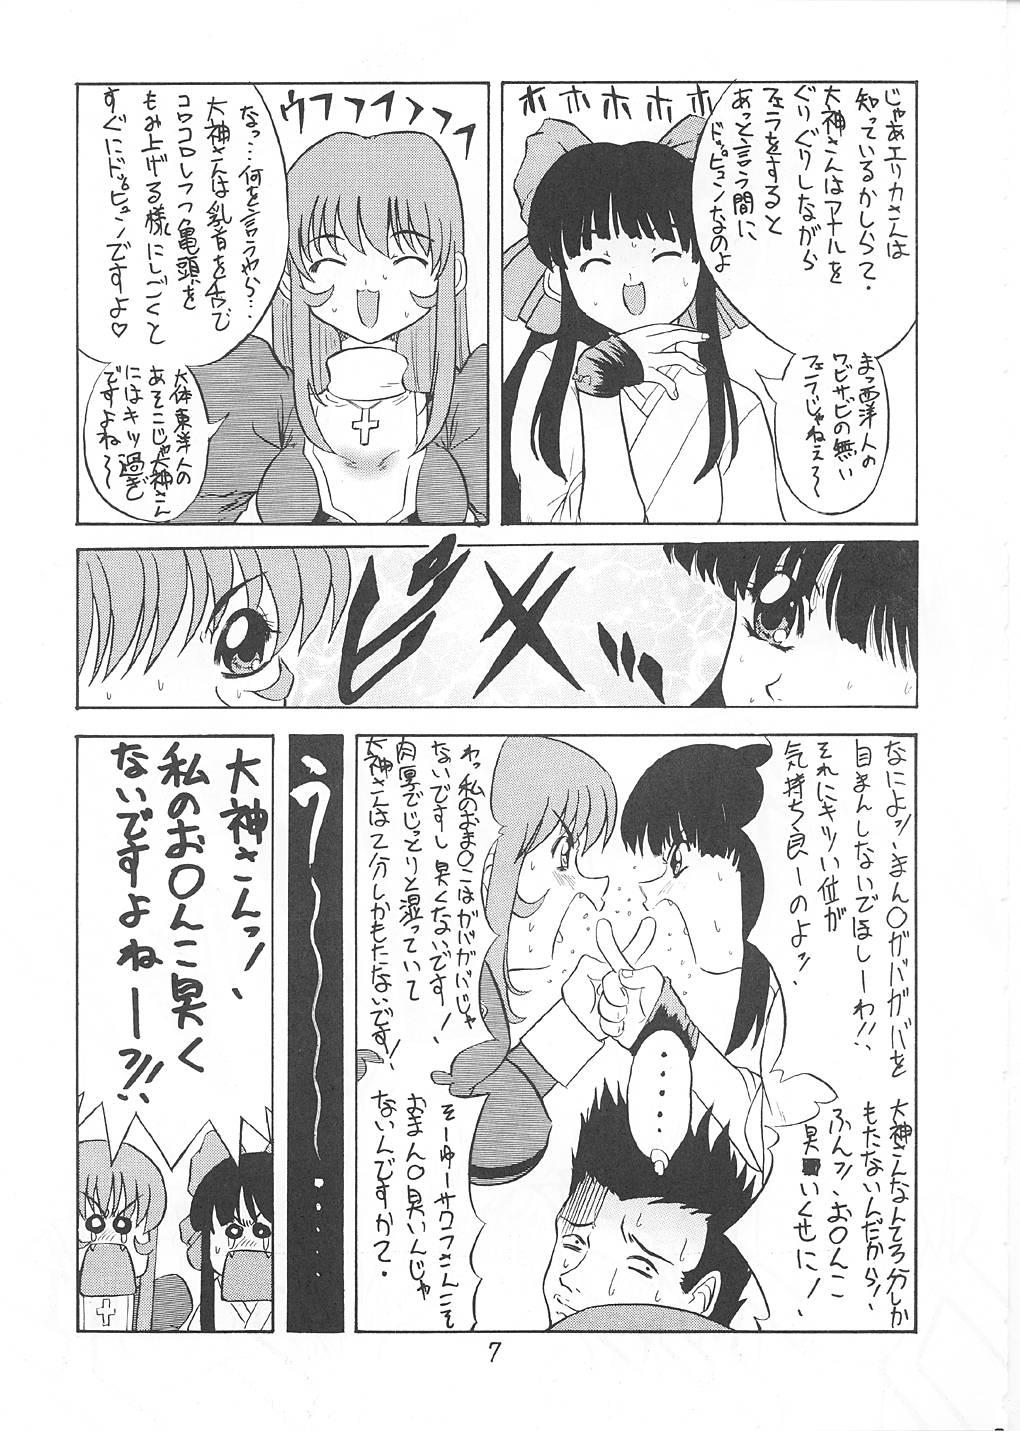 Culito ANDO4 - Sakura taisen Cojiendo - Page 8